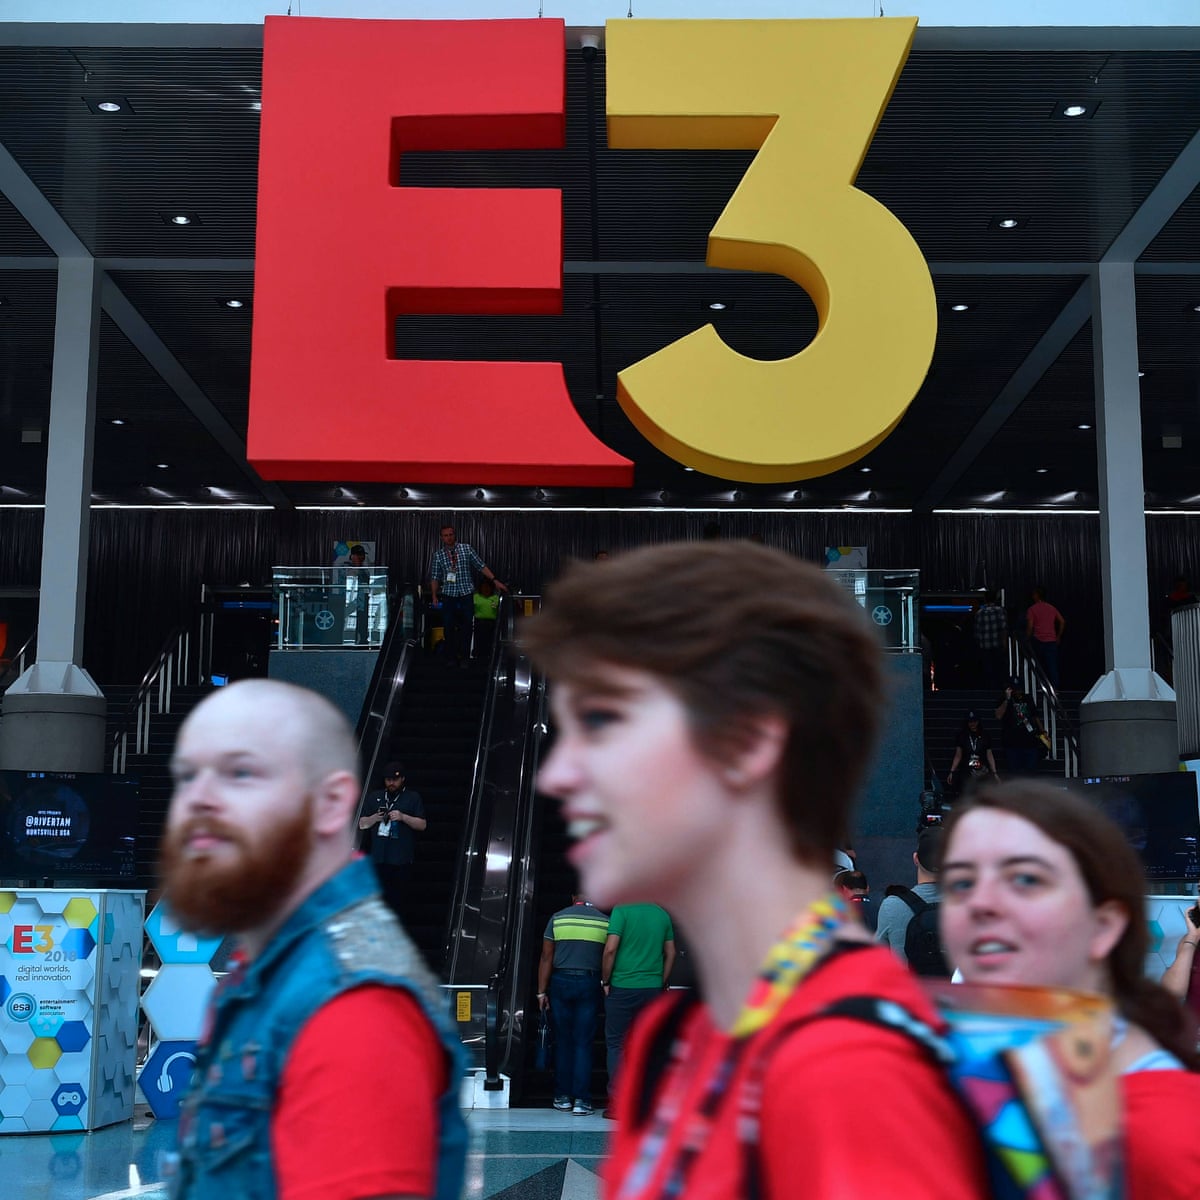 دانلود مراسم نمایشگاه سرگرمی های الکترونیکی 2018 - دانلود نمایشگاه E3 2018